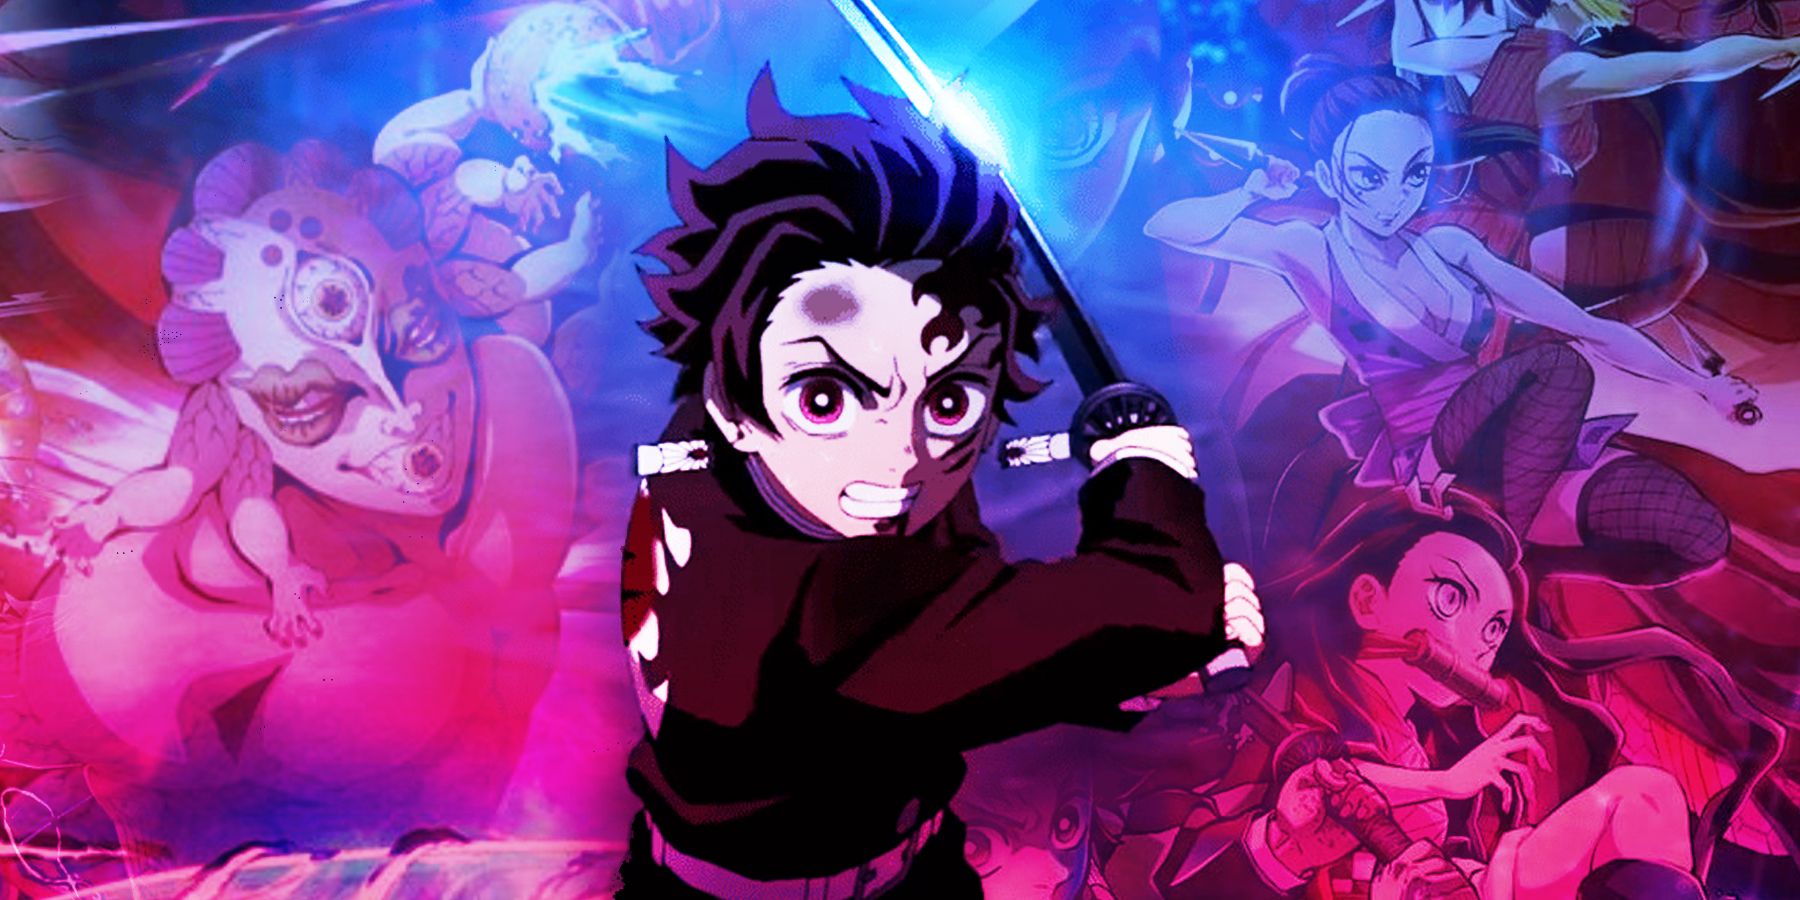 Tanjiro empunhando sua espada Nichirin na frente de uma colagem de demônios e outros matadores de demônios do anime Demon Slayer